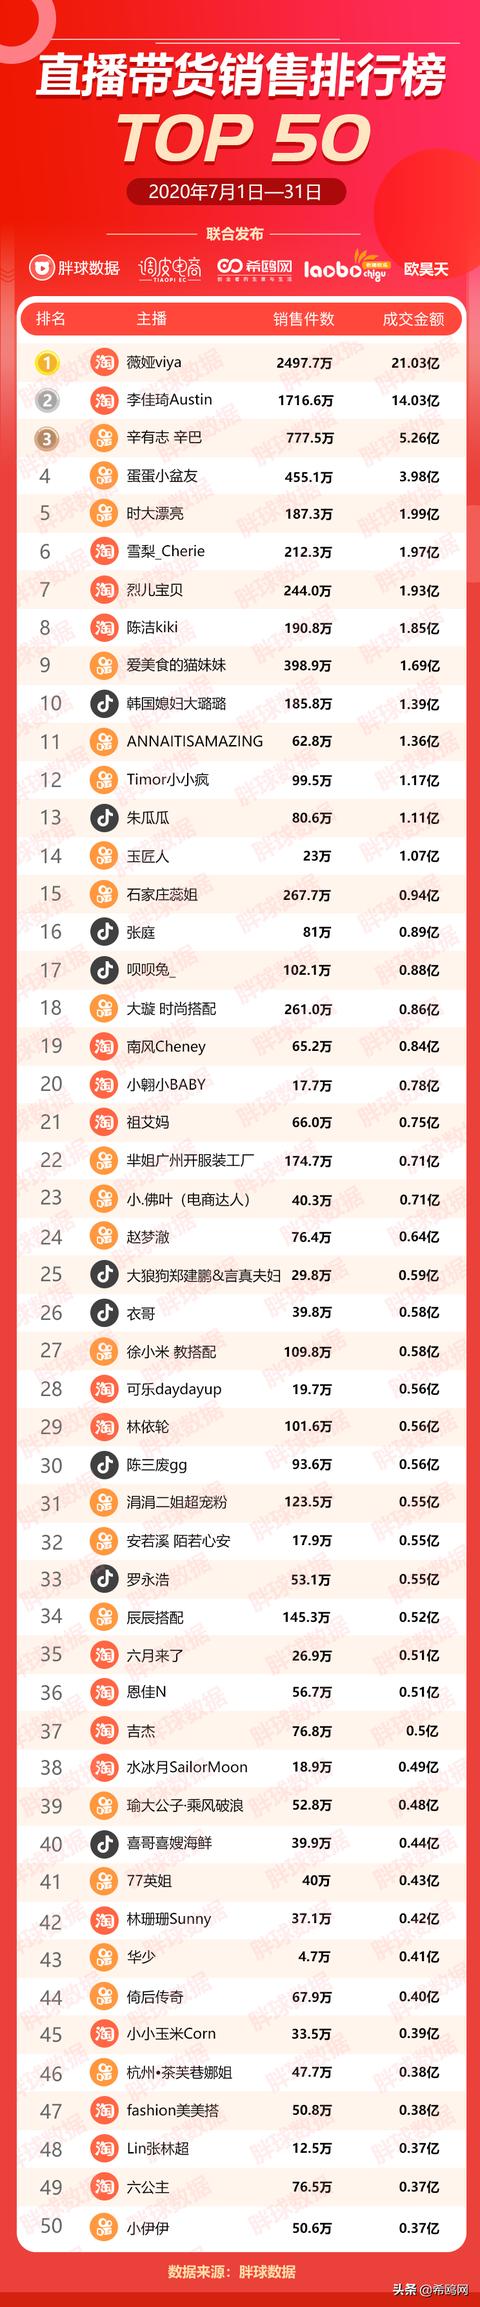 7月份直播带货销售排行榜TOP50榜单，薇娅卖货21亿排名第一